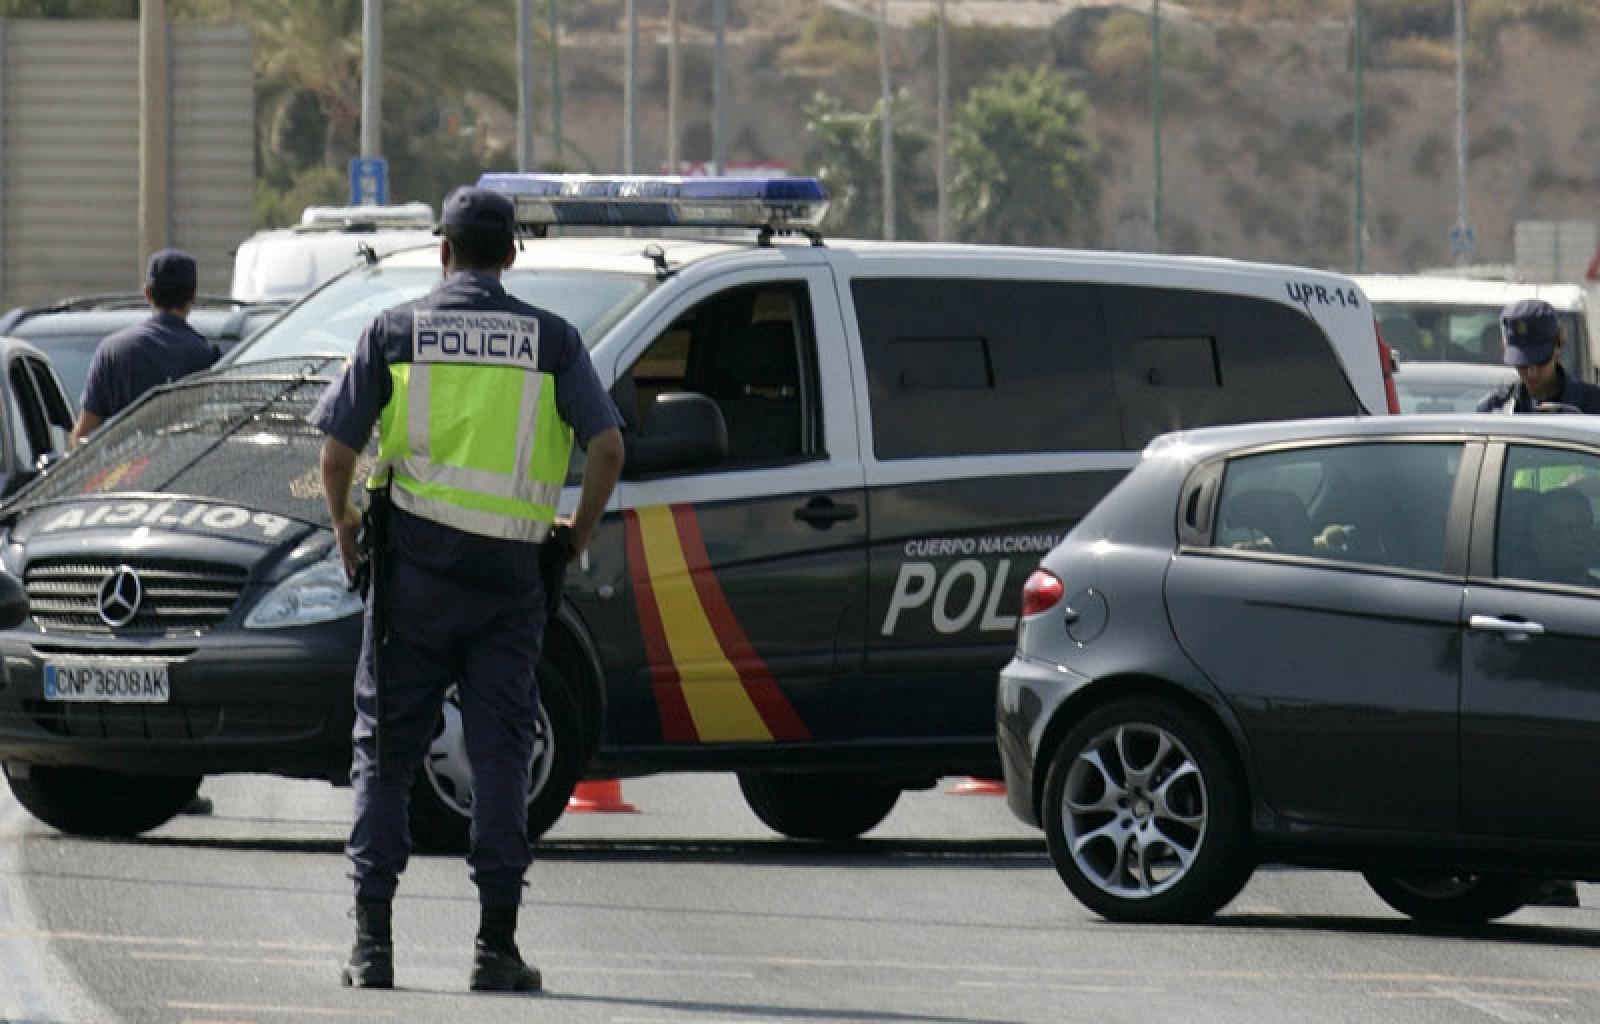 Španska policija oslobodila žene primorane da rade kao prostitutke